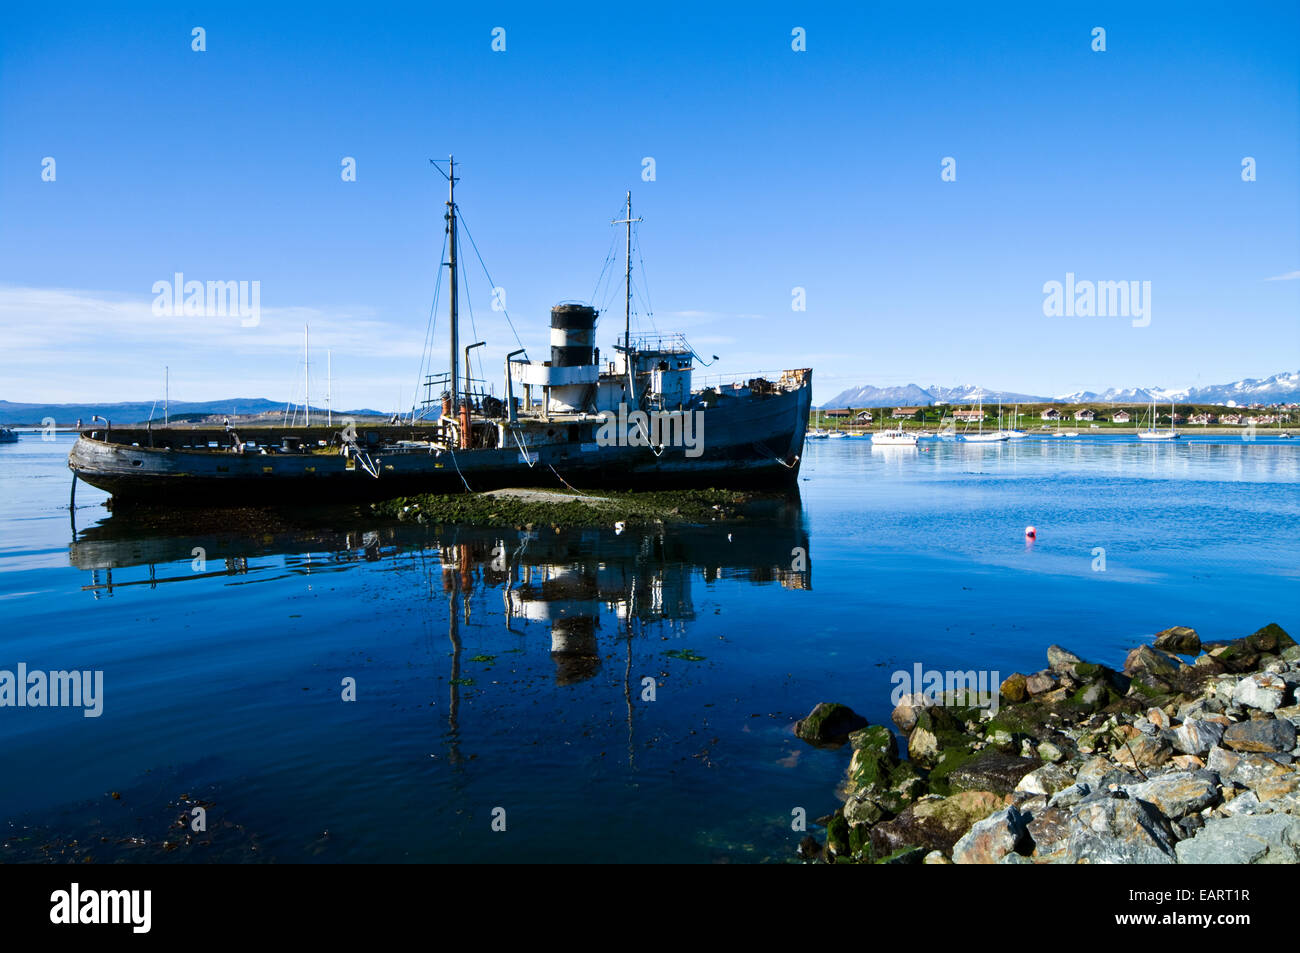 Ein Schlepper Schiffswrack liegt in den Untiefen einer geschützten Bucht. Stockfoto